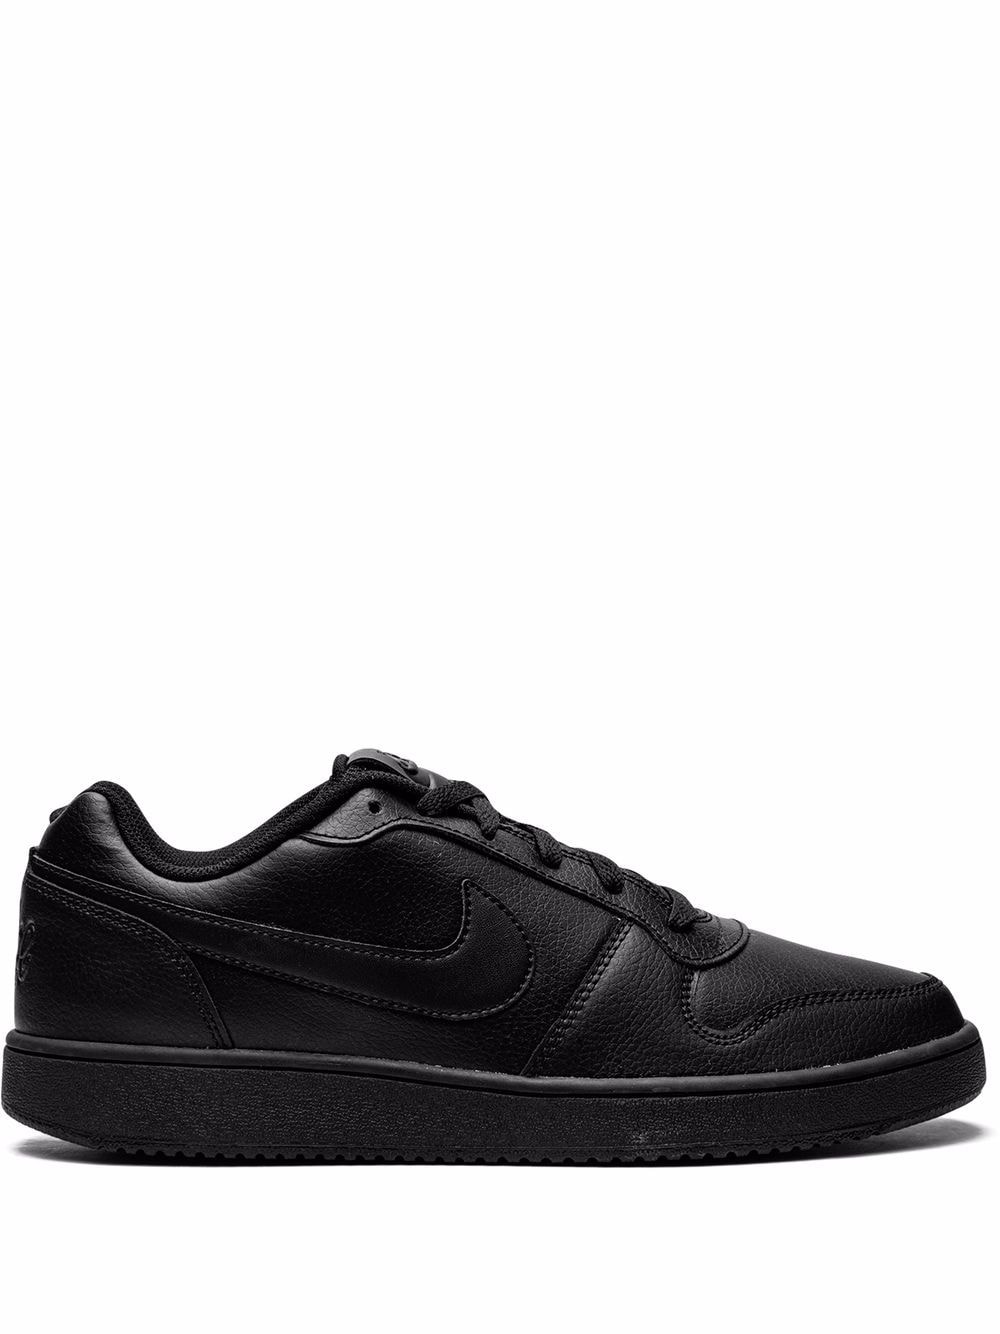 Nike Ebernon Low sneakers - Black von Nike